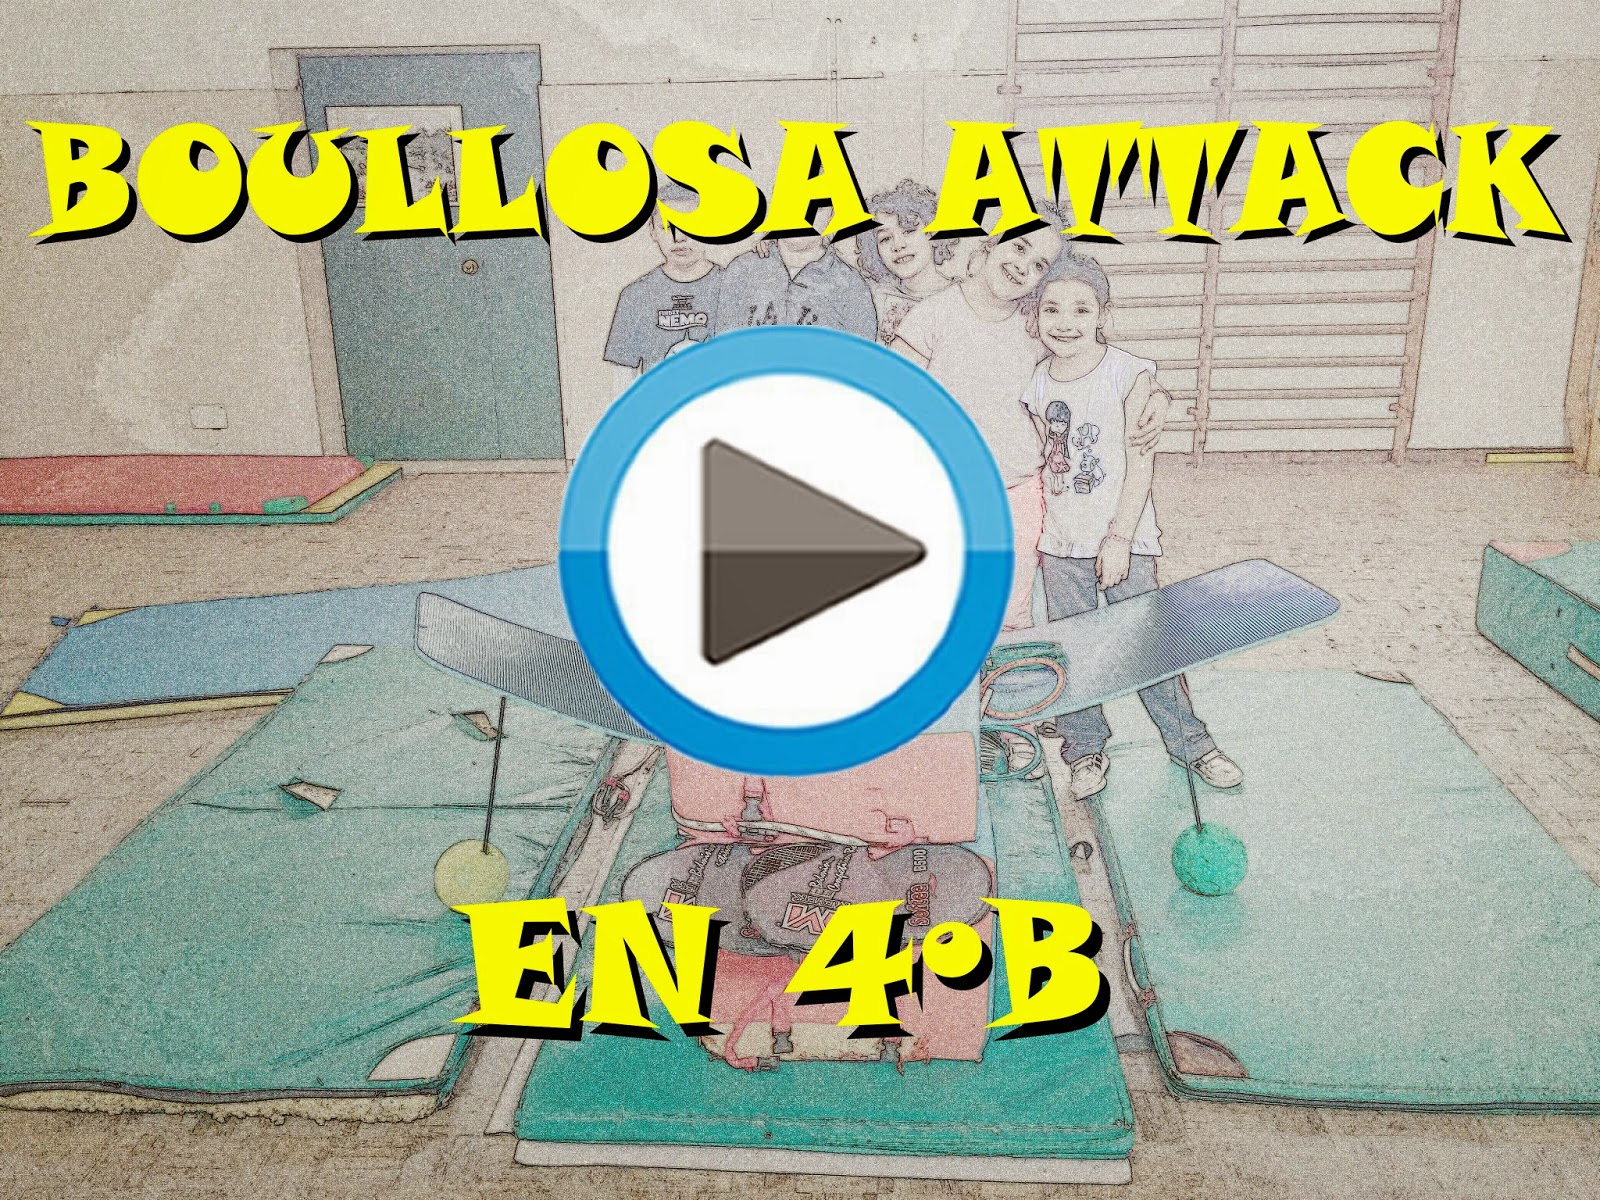  Boullosa Attack en 4ºB